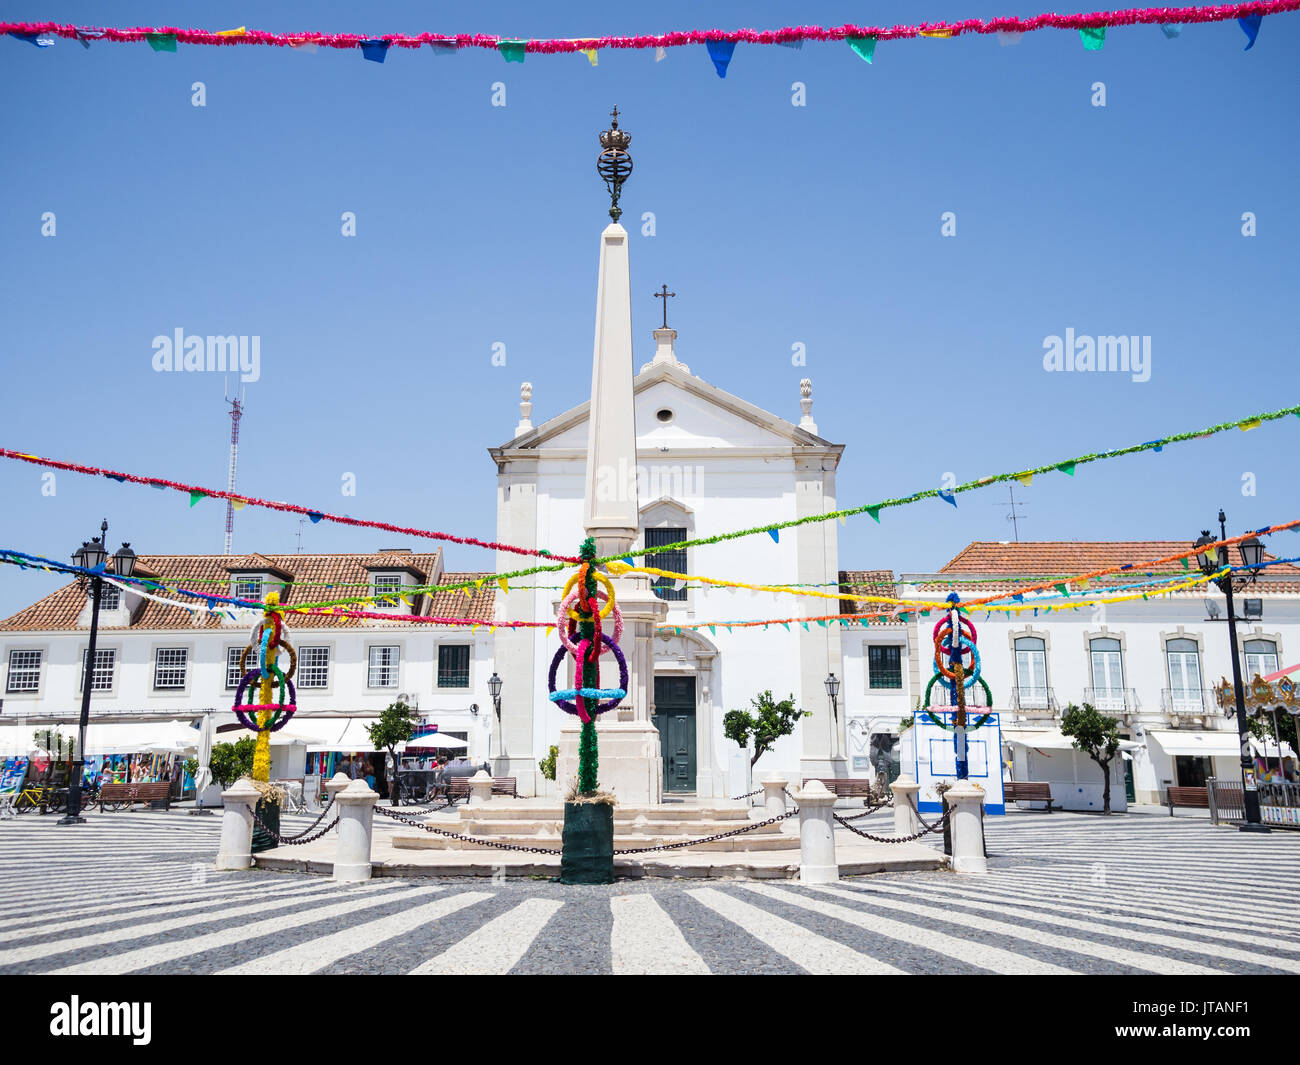 VILA REAL DE Santo Antonio, PORTUGAL - 15 juillet 2017. L'attrayant et pavage monument de la place principale de la ville. Bunting Festival peut être vu et le Banque D'Images